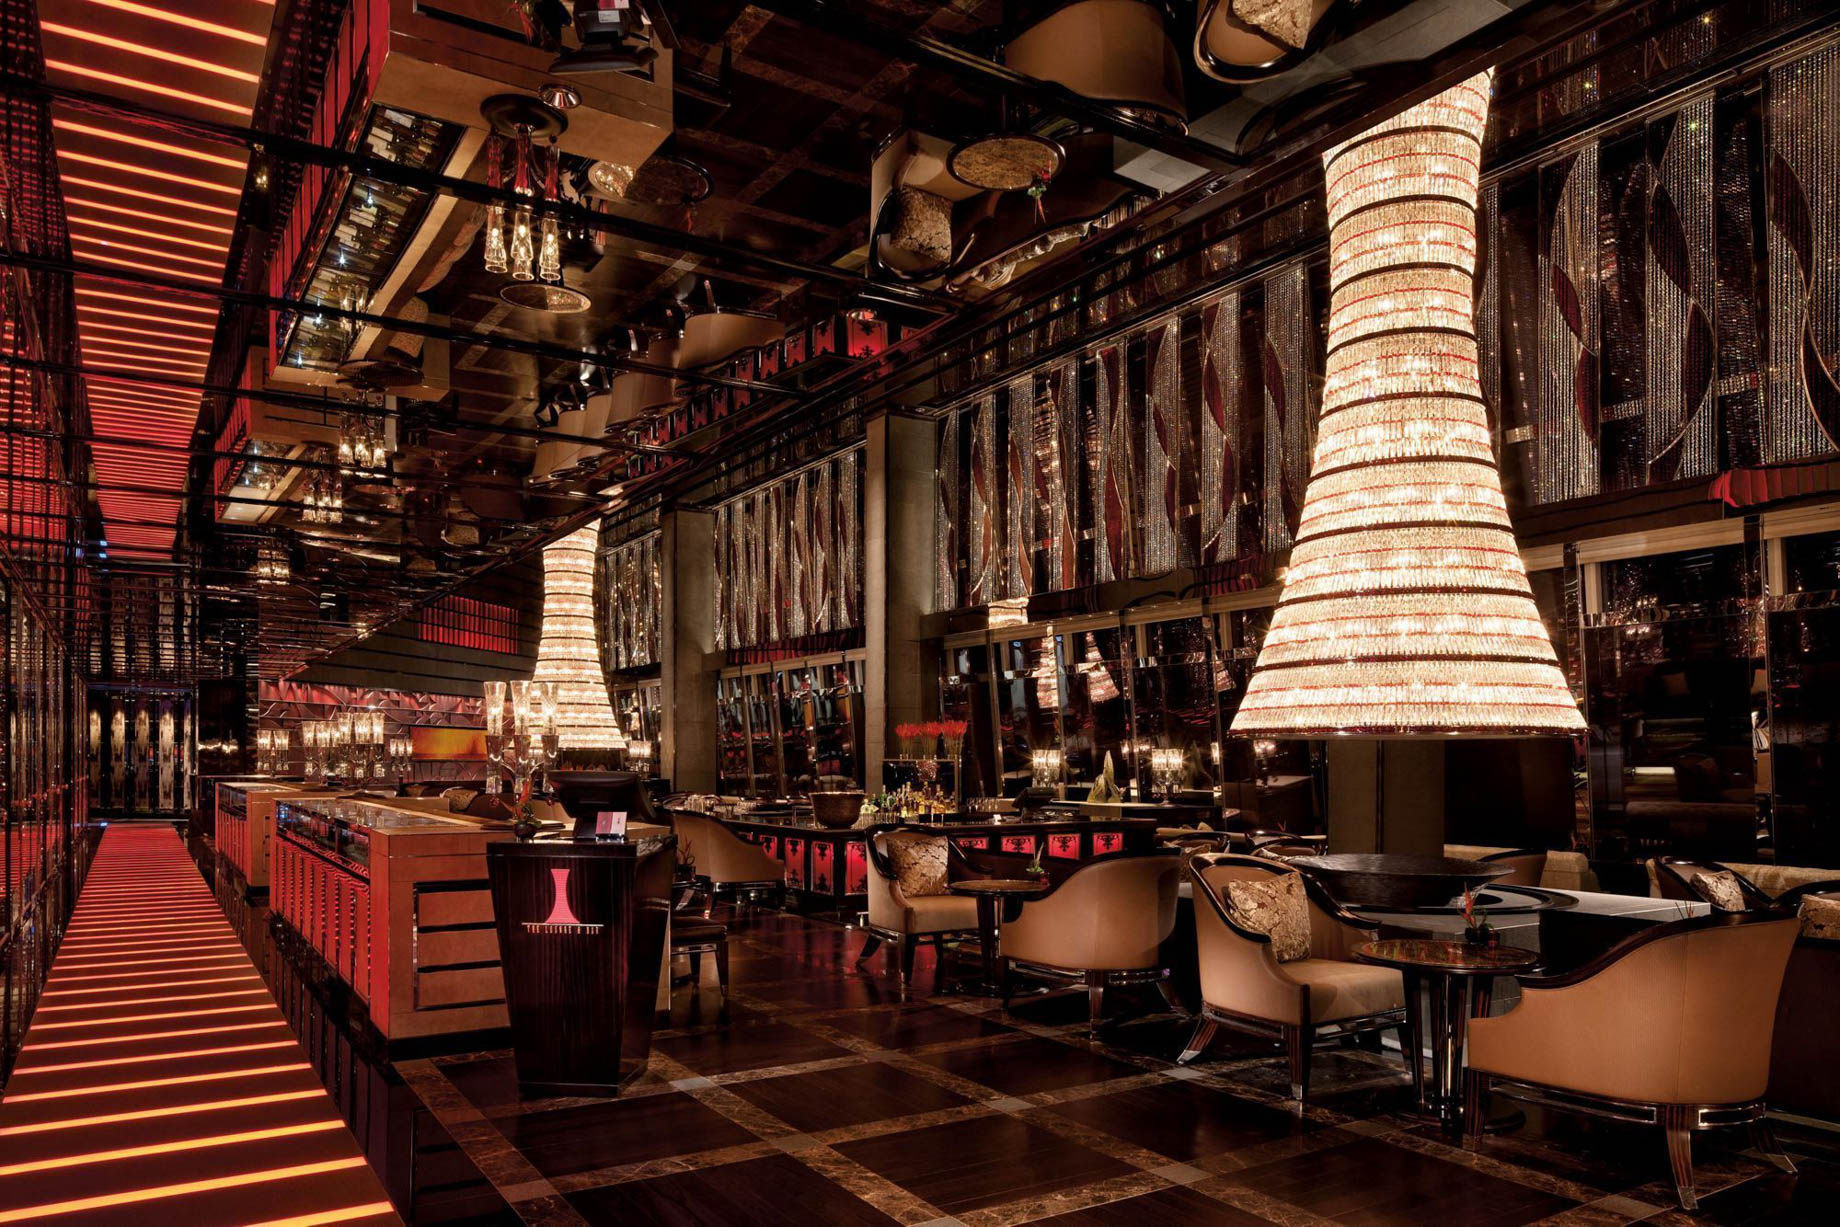 The Ritz-Carlton, Hong Kong Hotel – West Kowloon, Hong Kong – The Lounge & Bar Interior